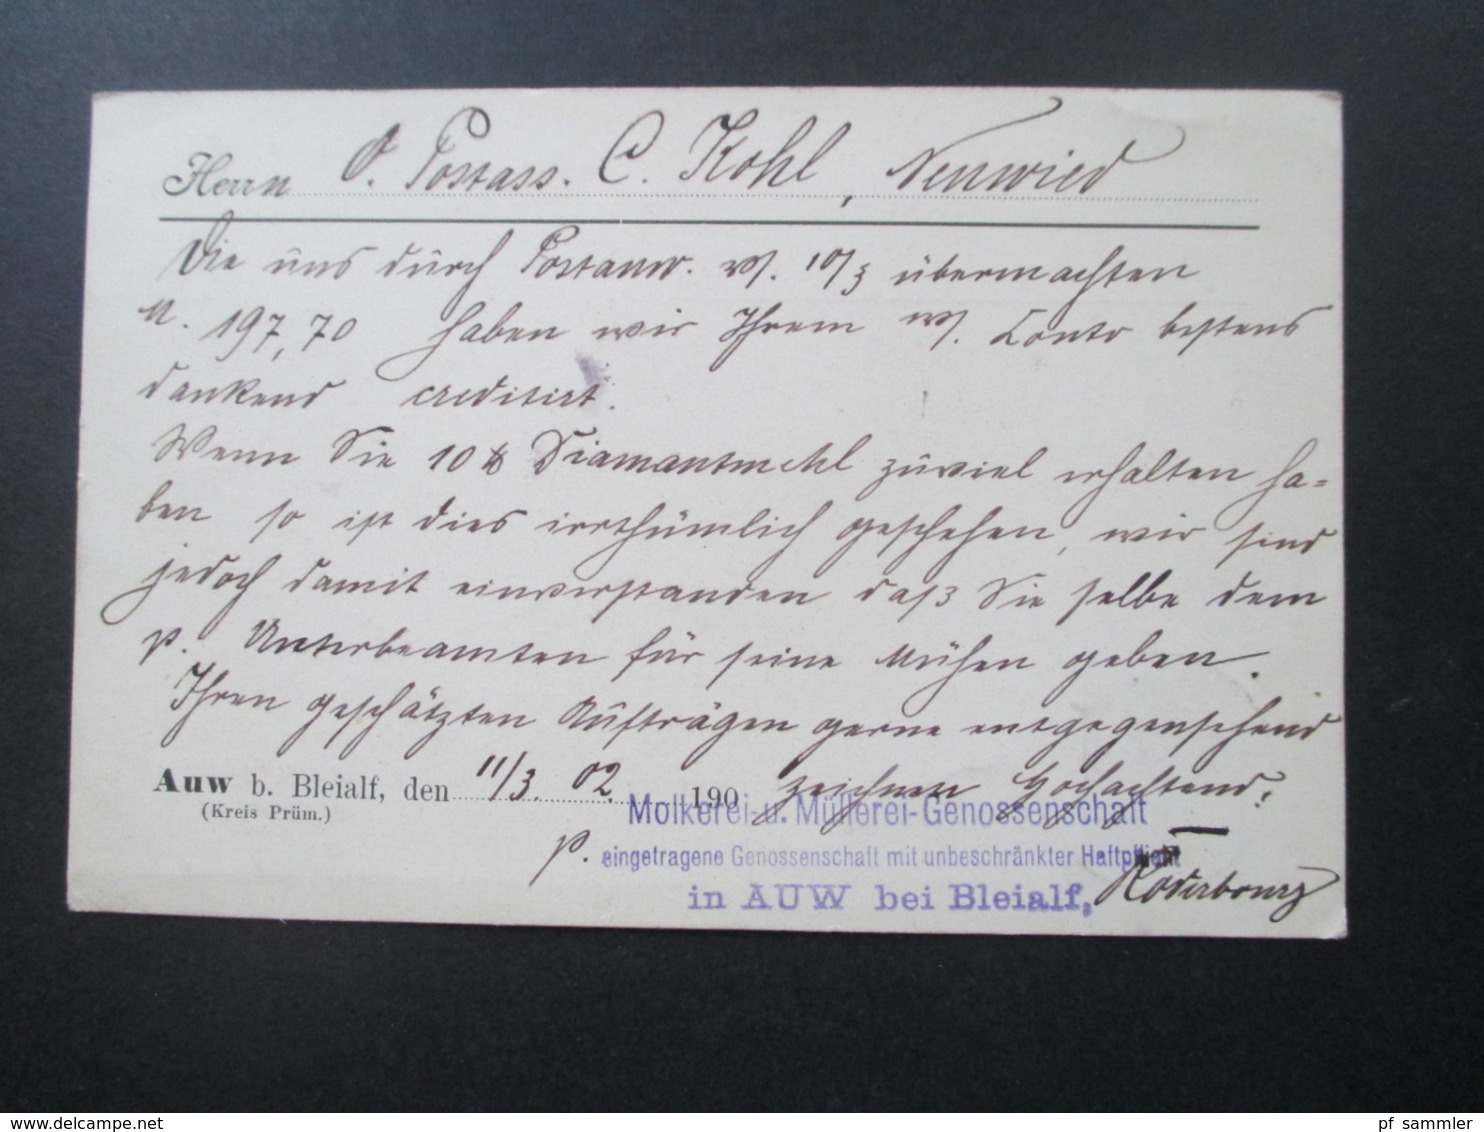 DR 1902 Reichspost Firmenkarte Molkerei U. Müllerei Genossenschaft Dampfsägewerk In Auw Bei Bleialf KOS Auw - Briefe U. Dokumente